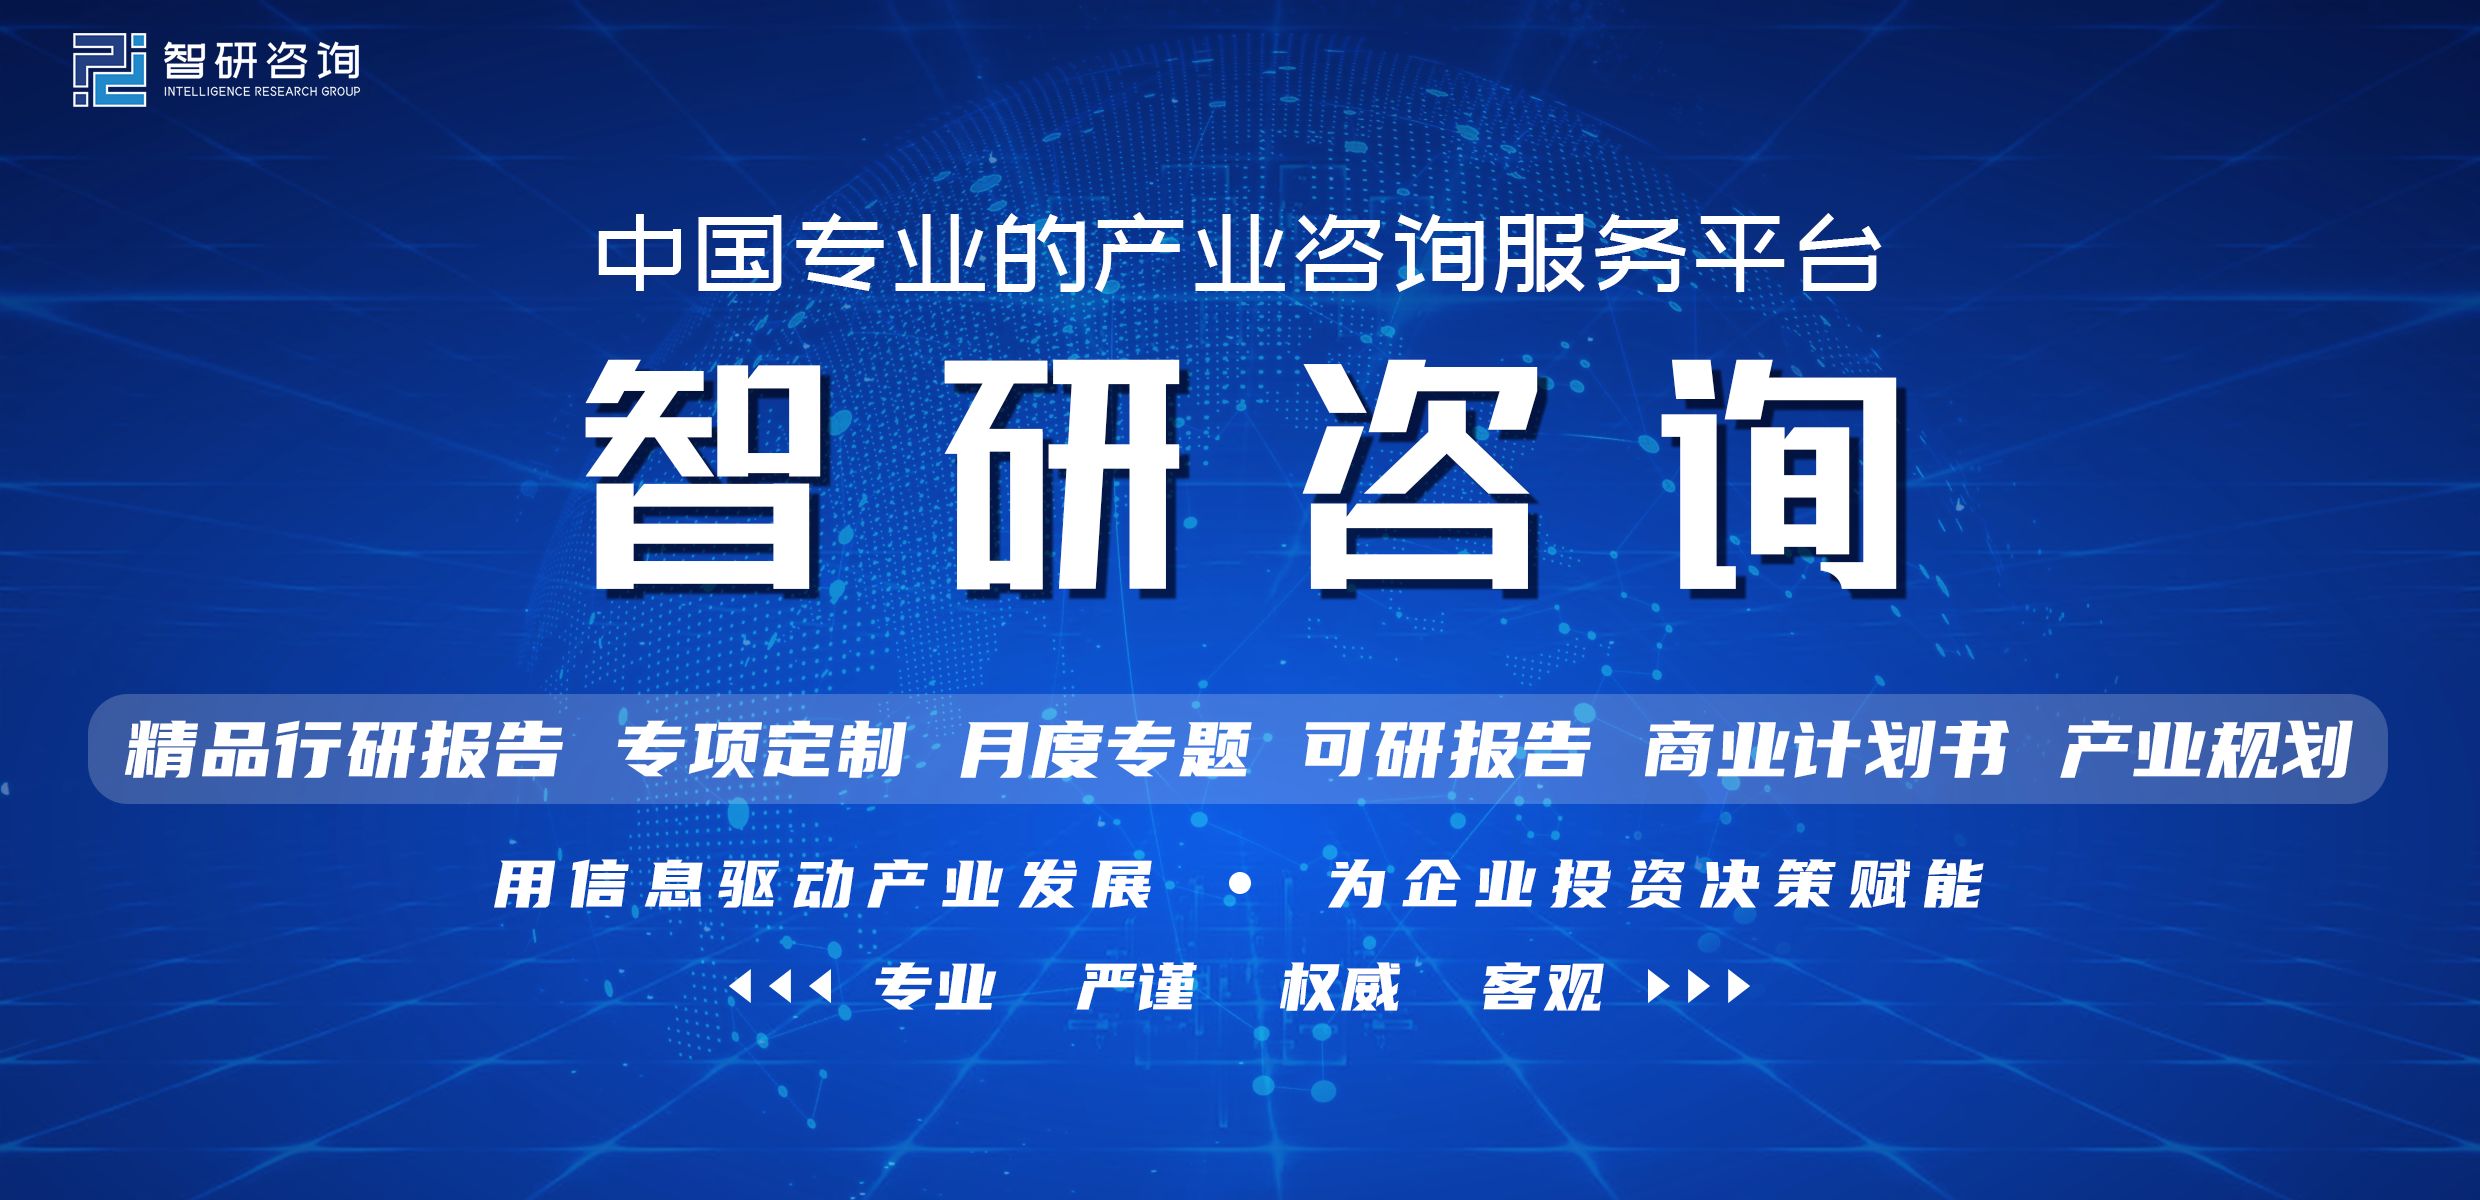 中国互联网+信息安全行业市场运行态势及发展前景研究报告 ...-1.jpg